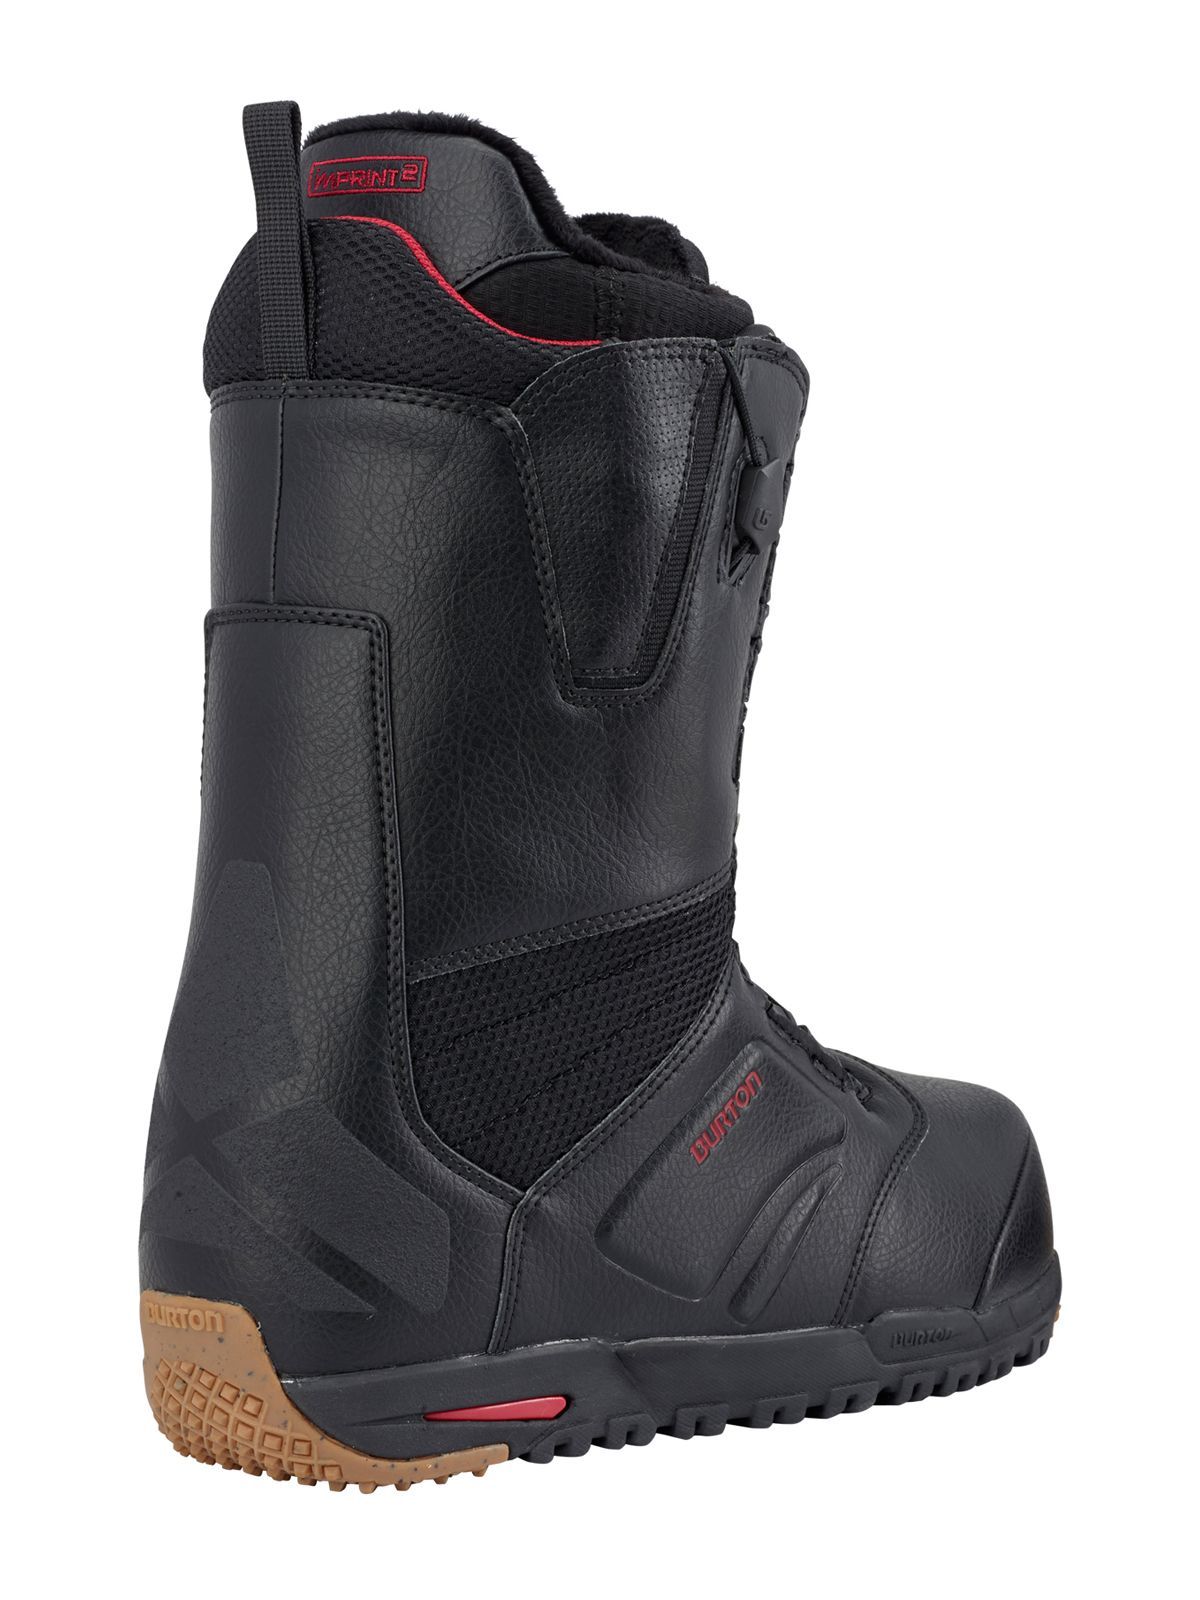 Burton Ruler Snowboard Boots zwart 2018